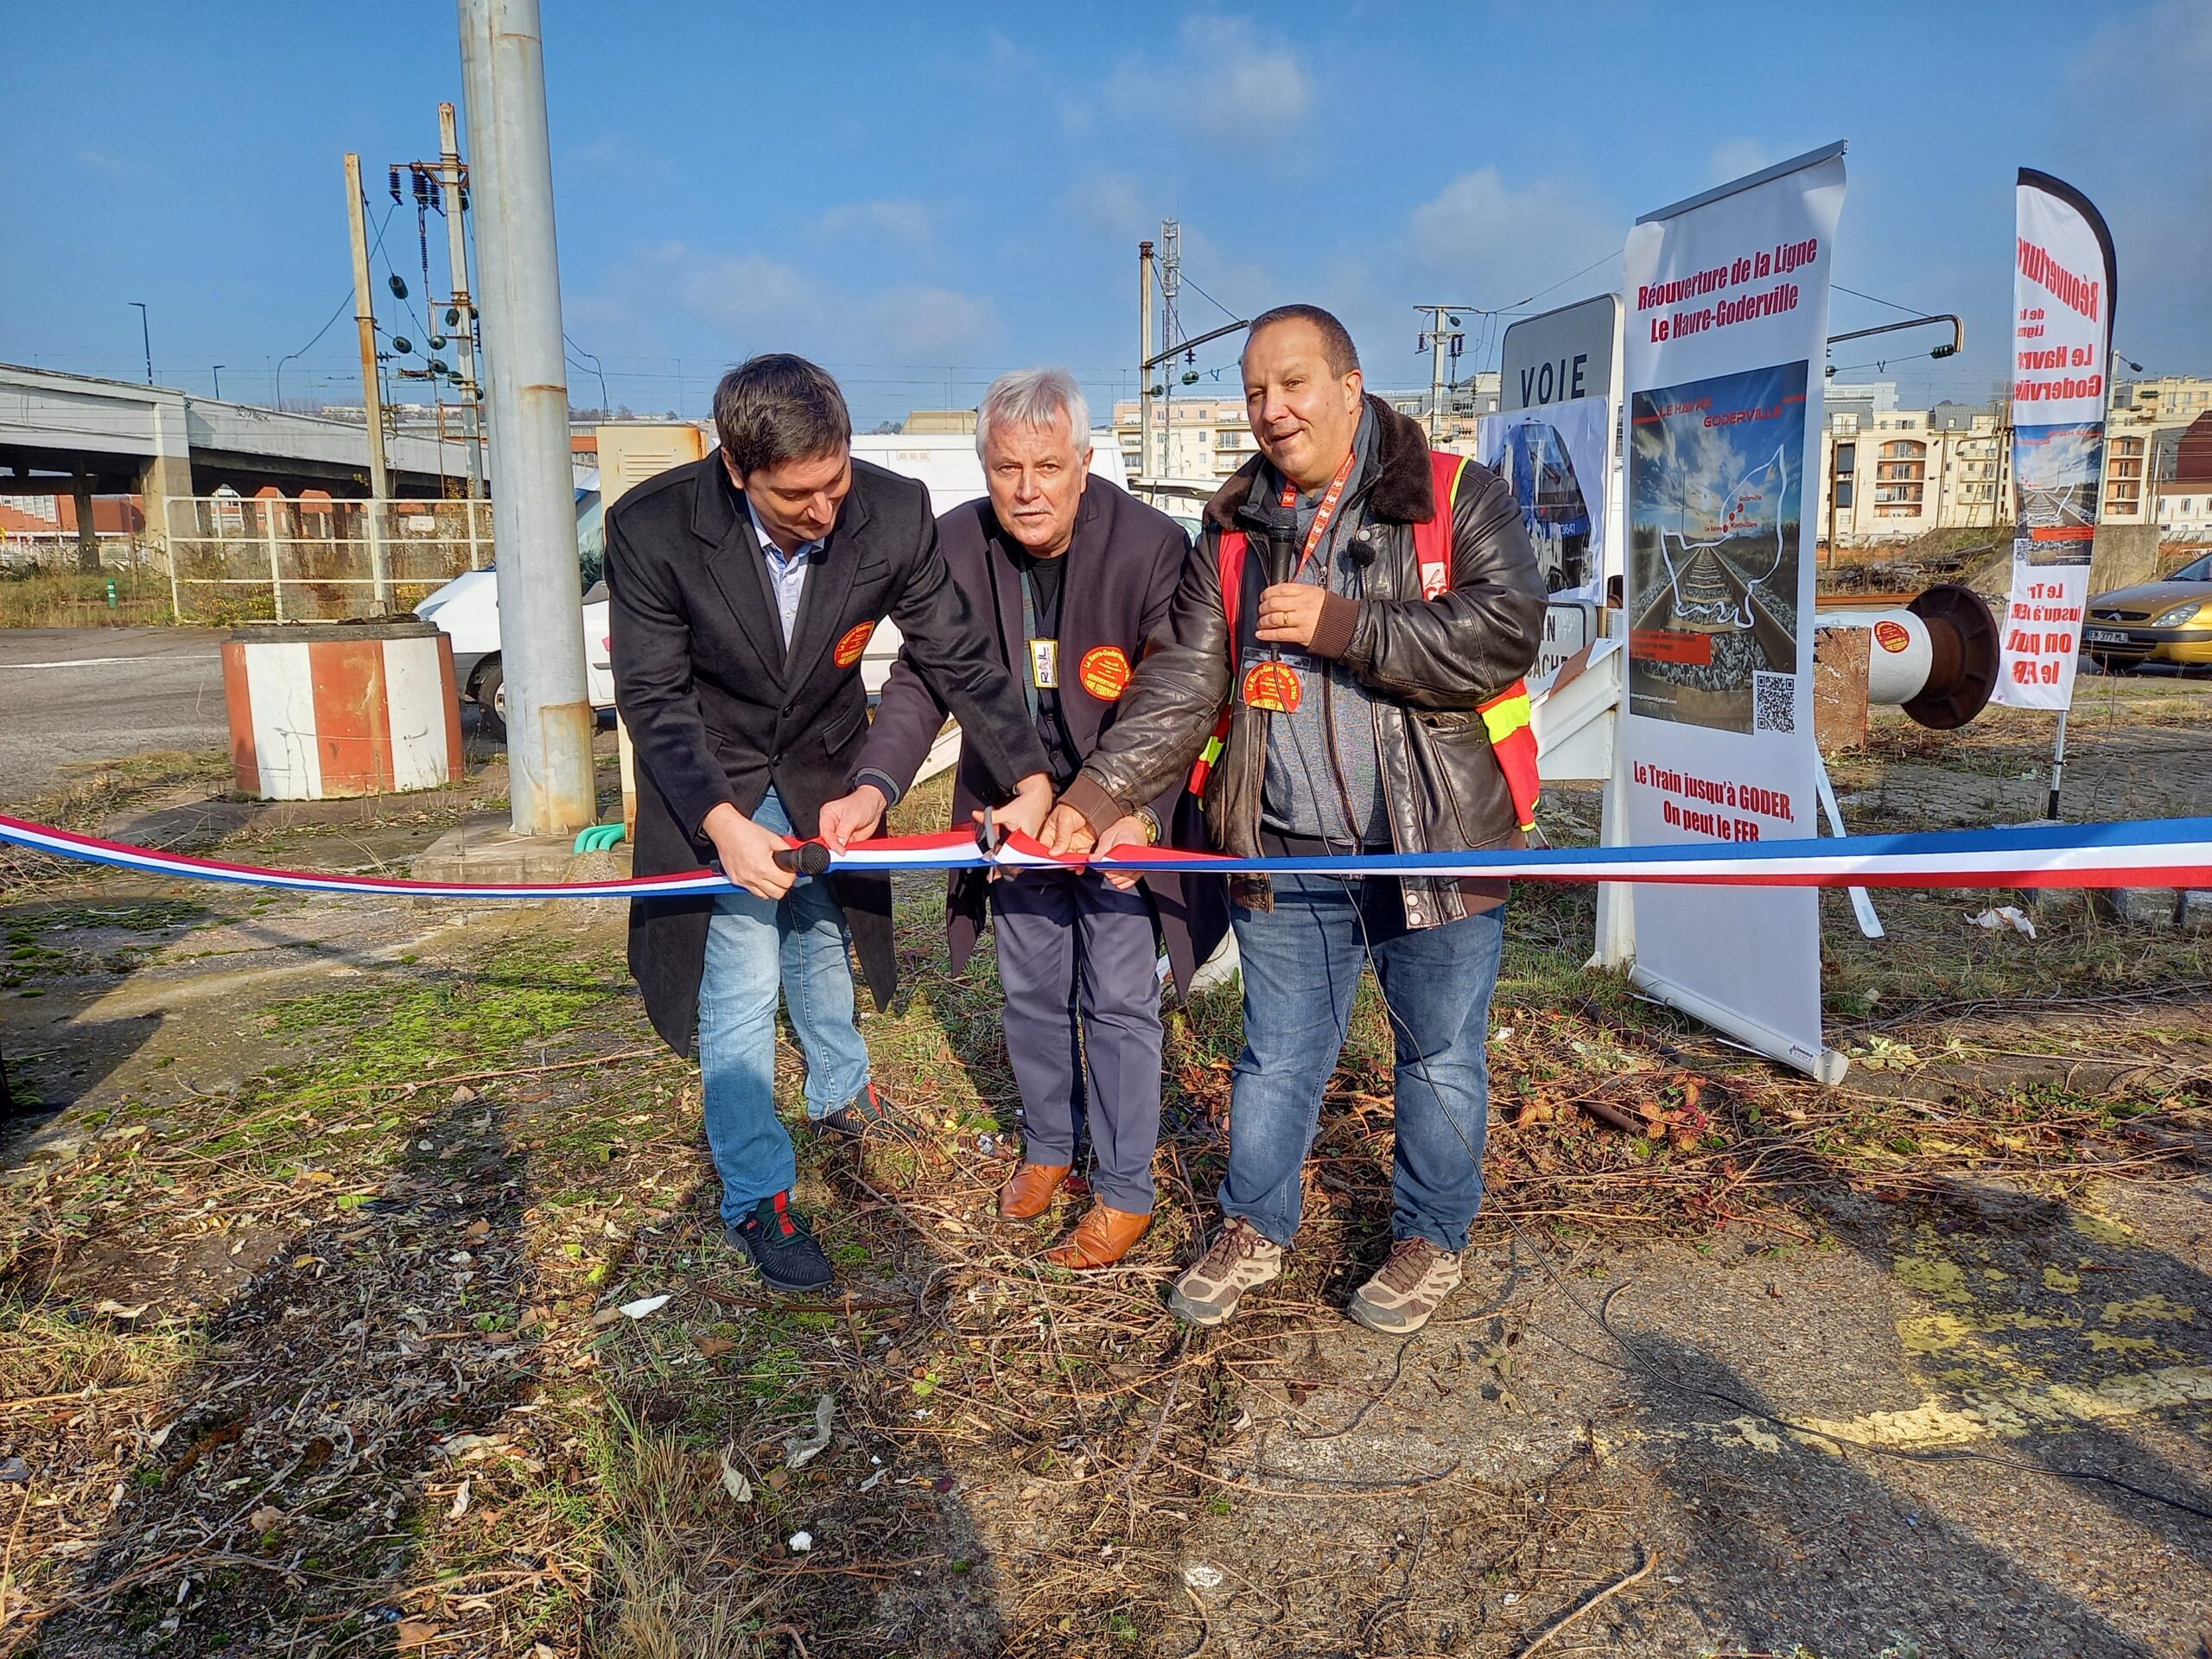 Les cheminots CGT de Normandie appellent à reconquérir le service public ferroviaire avec les usagers